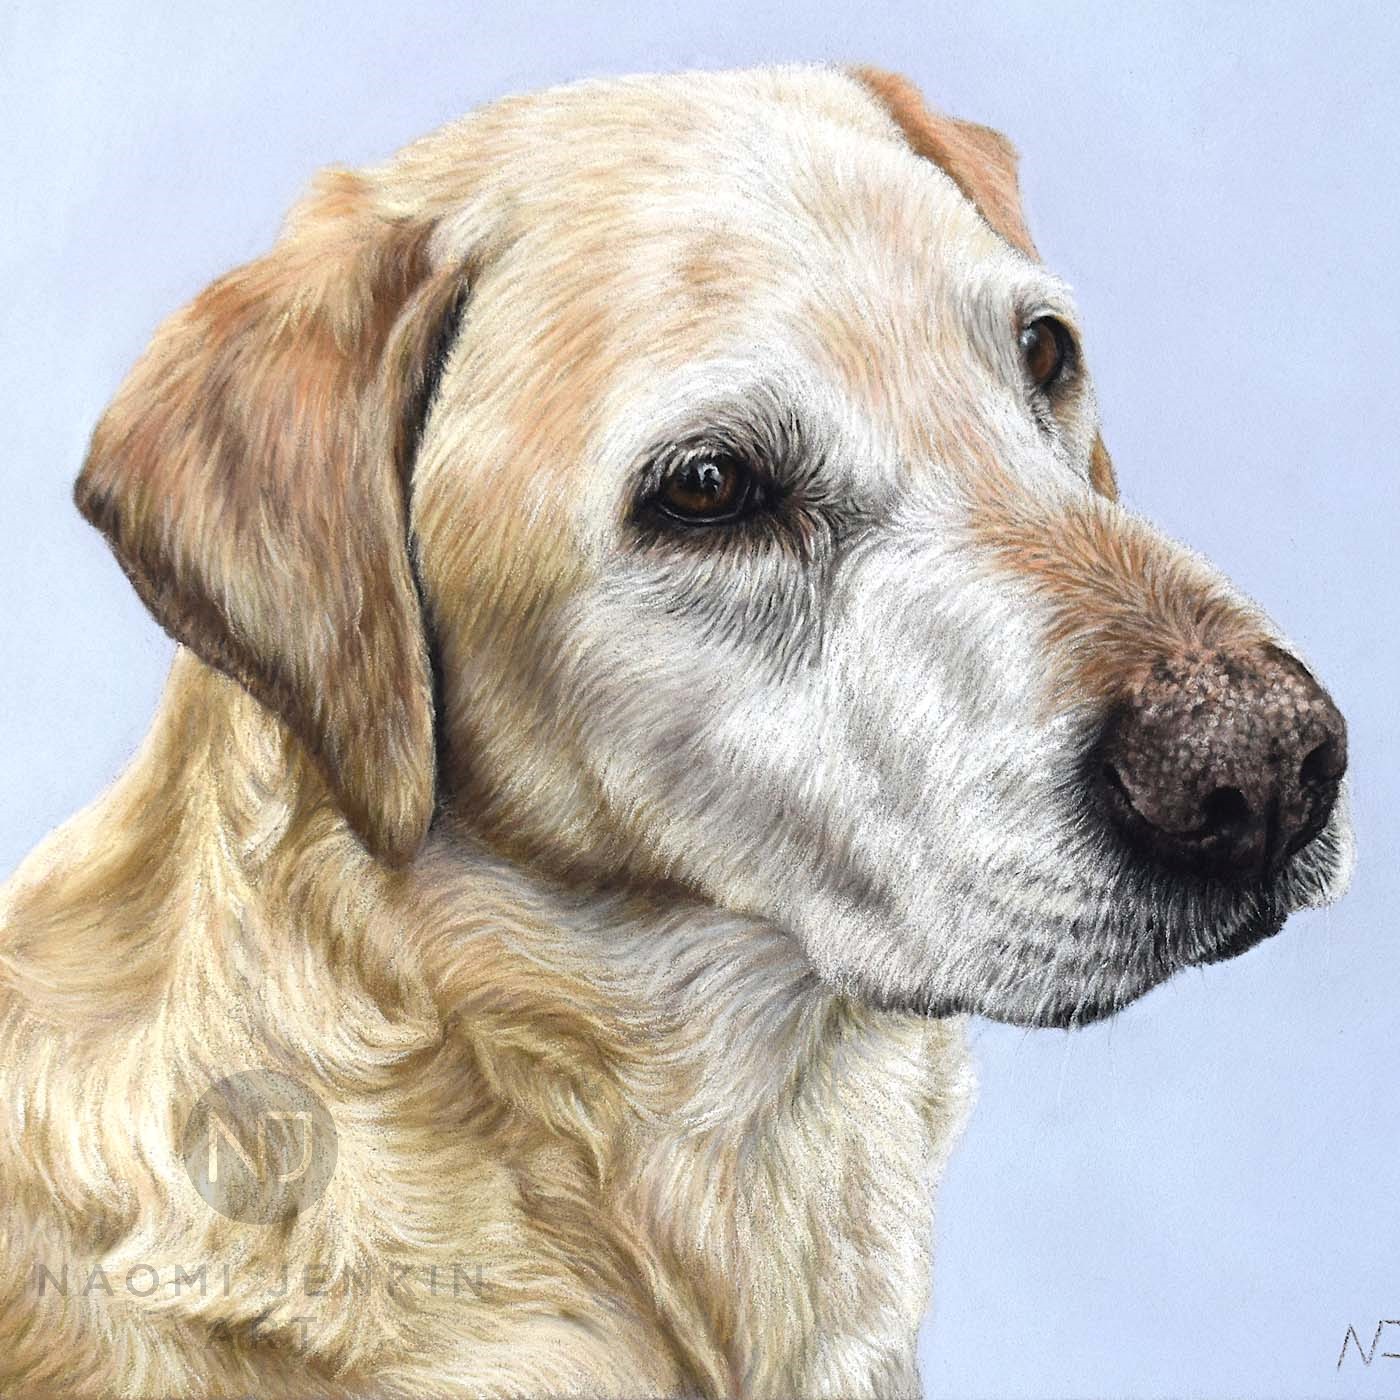 Yellow Labrador portrait by Naomi Jenkin Art.